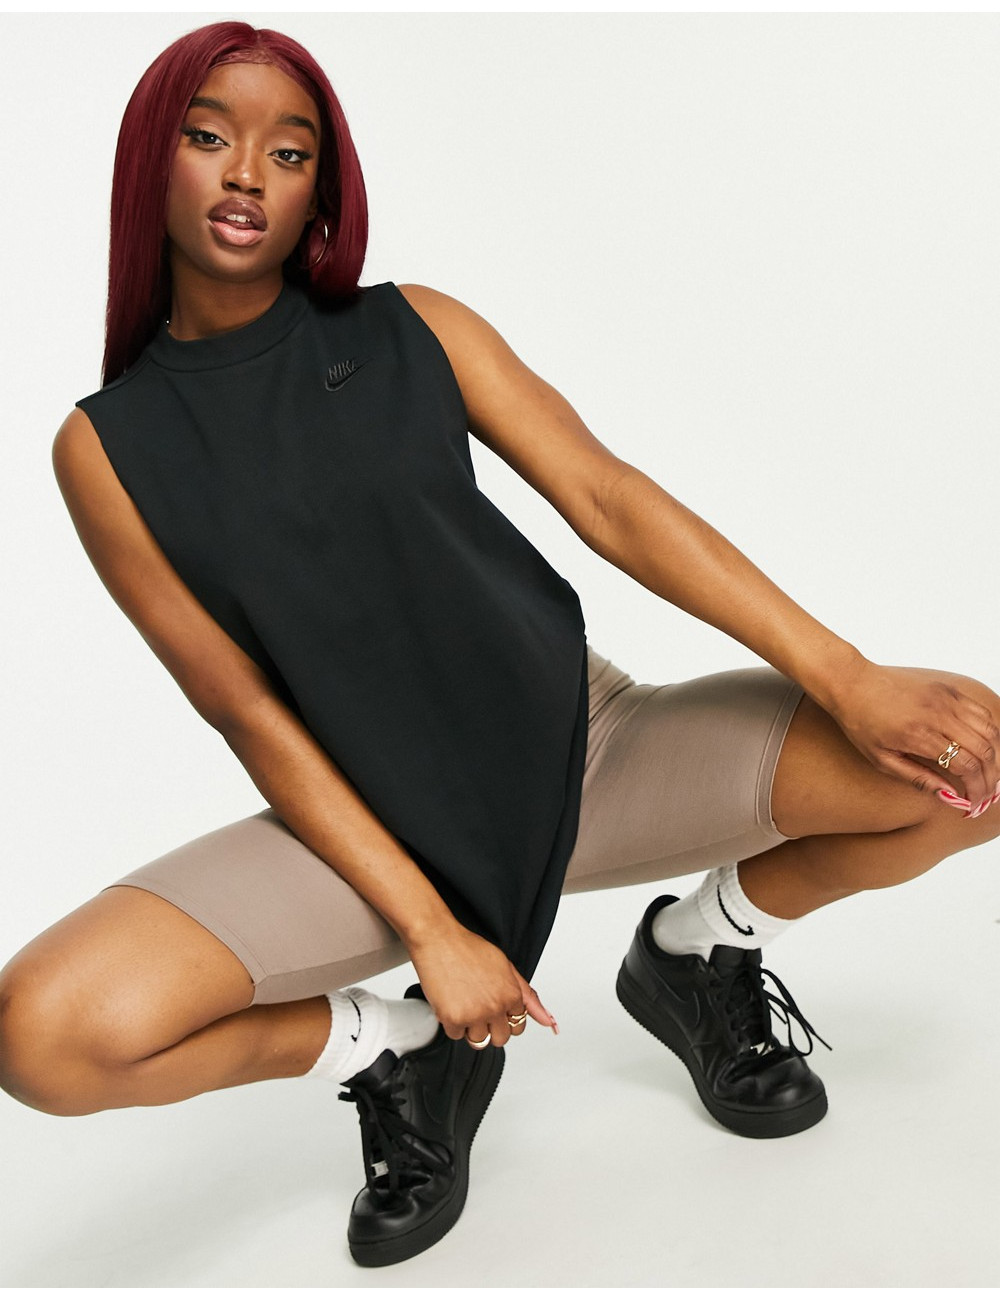 Nike Jersey Tunic Top in black